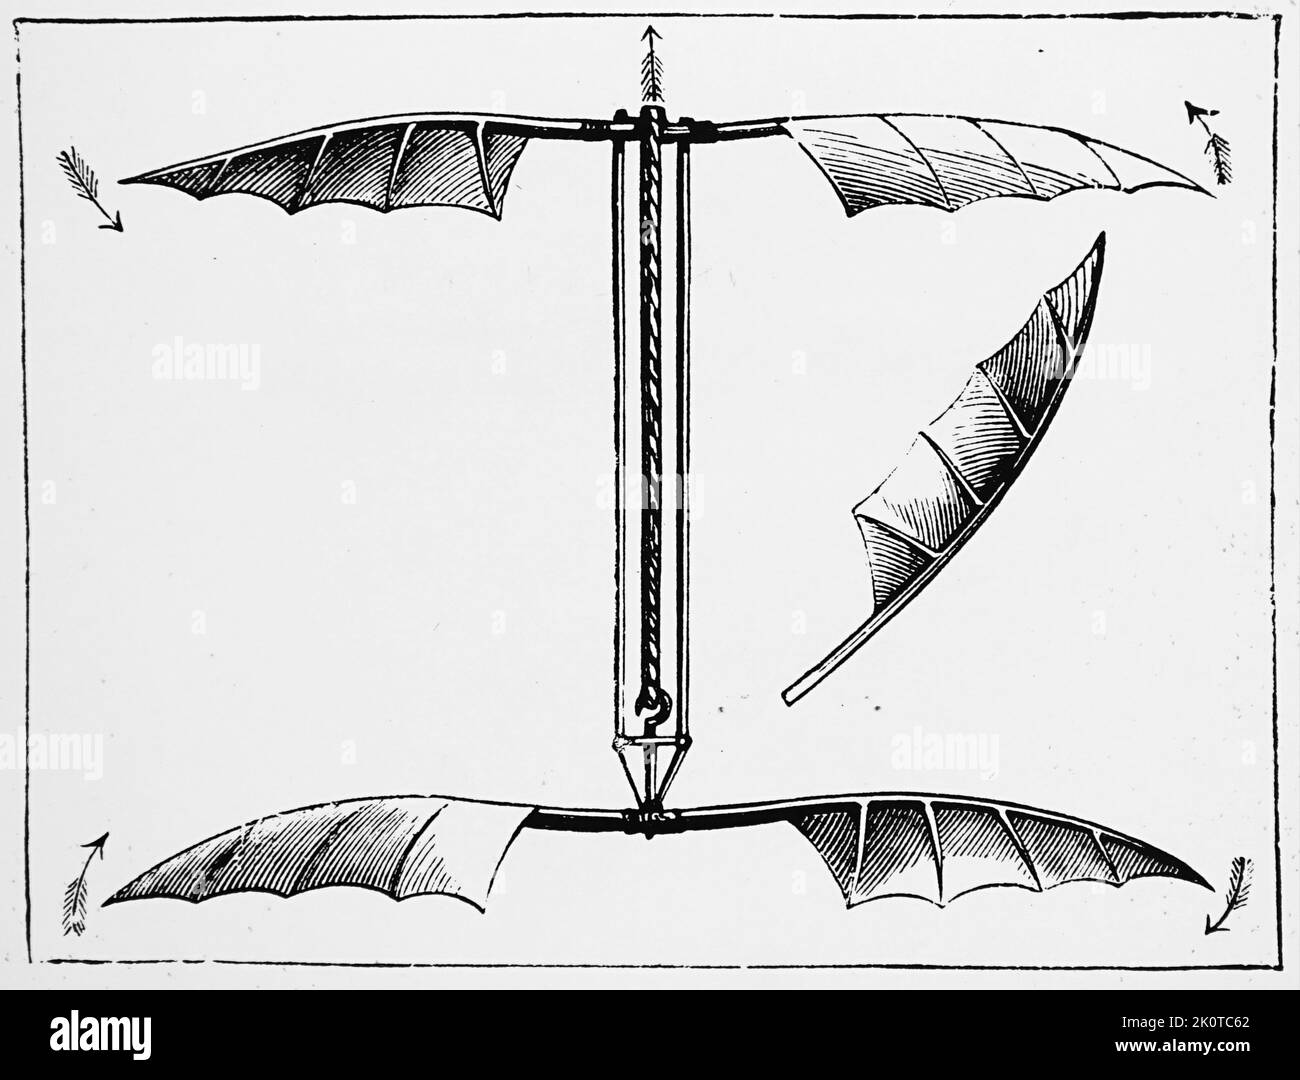 L'elicottero di Alphonse Pénaud, azionato da elastici ritorti. Alphonse Pénaud (1850-1880) progettista e ingegnere francese dell'aviazione. Datato 19th ° secolo Foto Stock